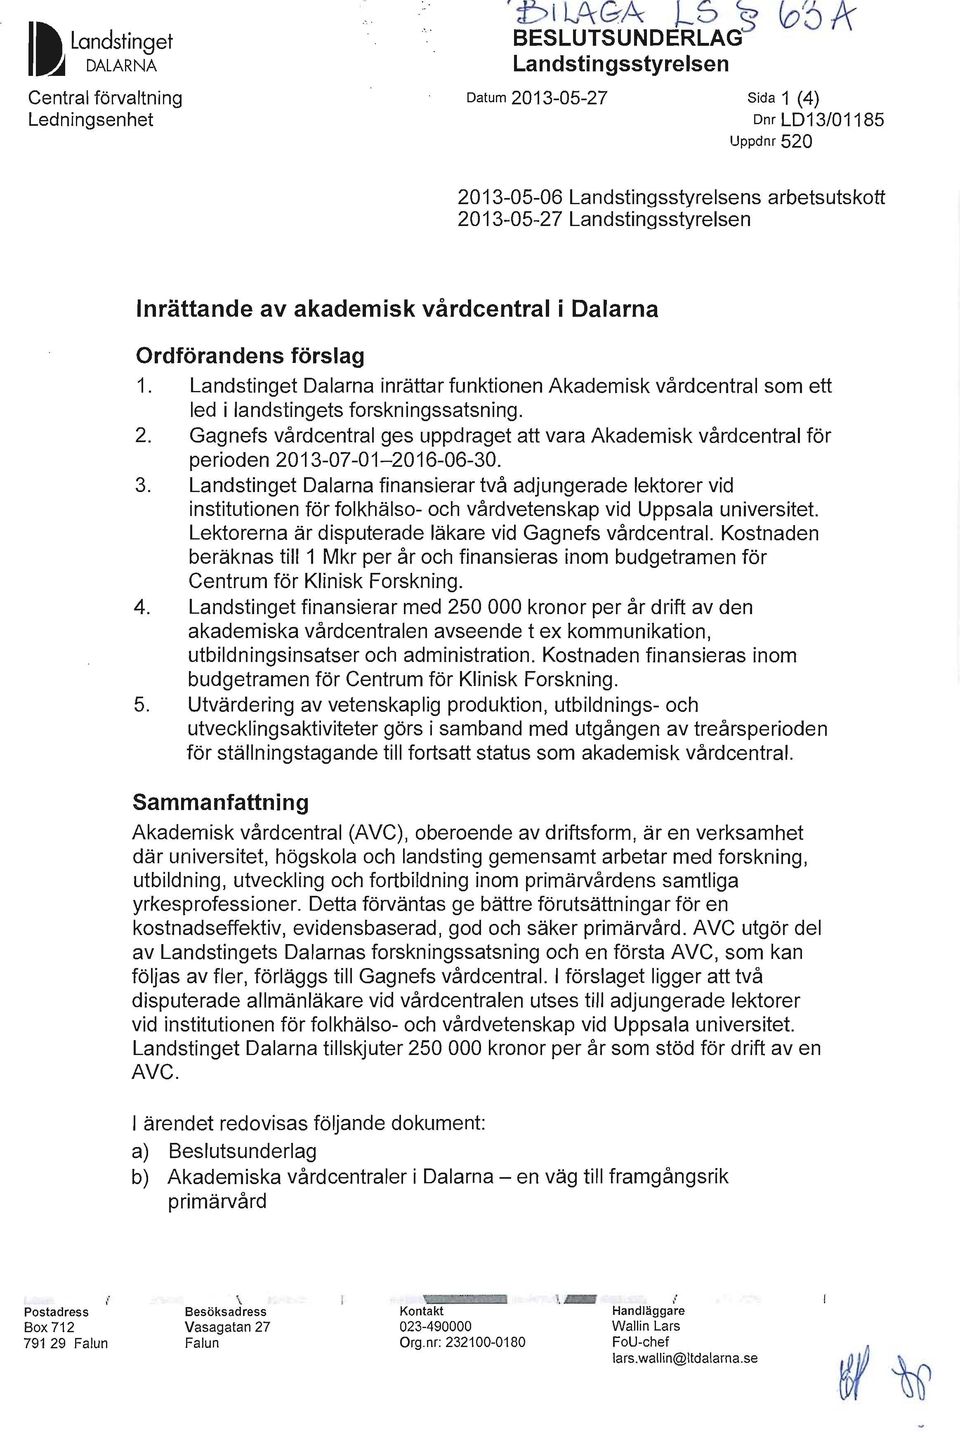 Landstinget Dalarna inrättar funktionen Akademisk vårdcentral som ett led i landstingets forskningssatsning. 2.